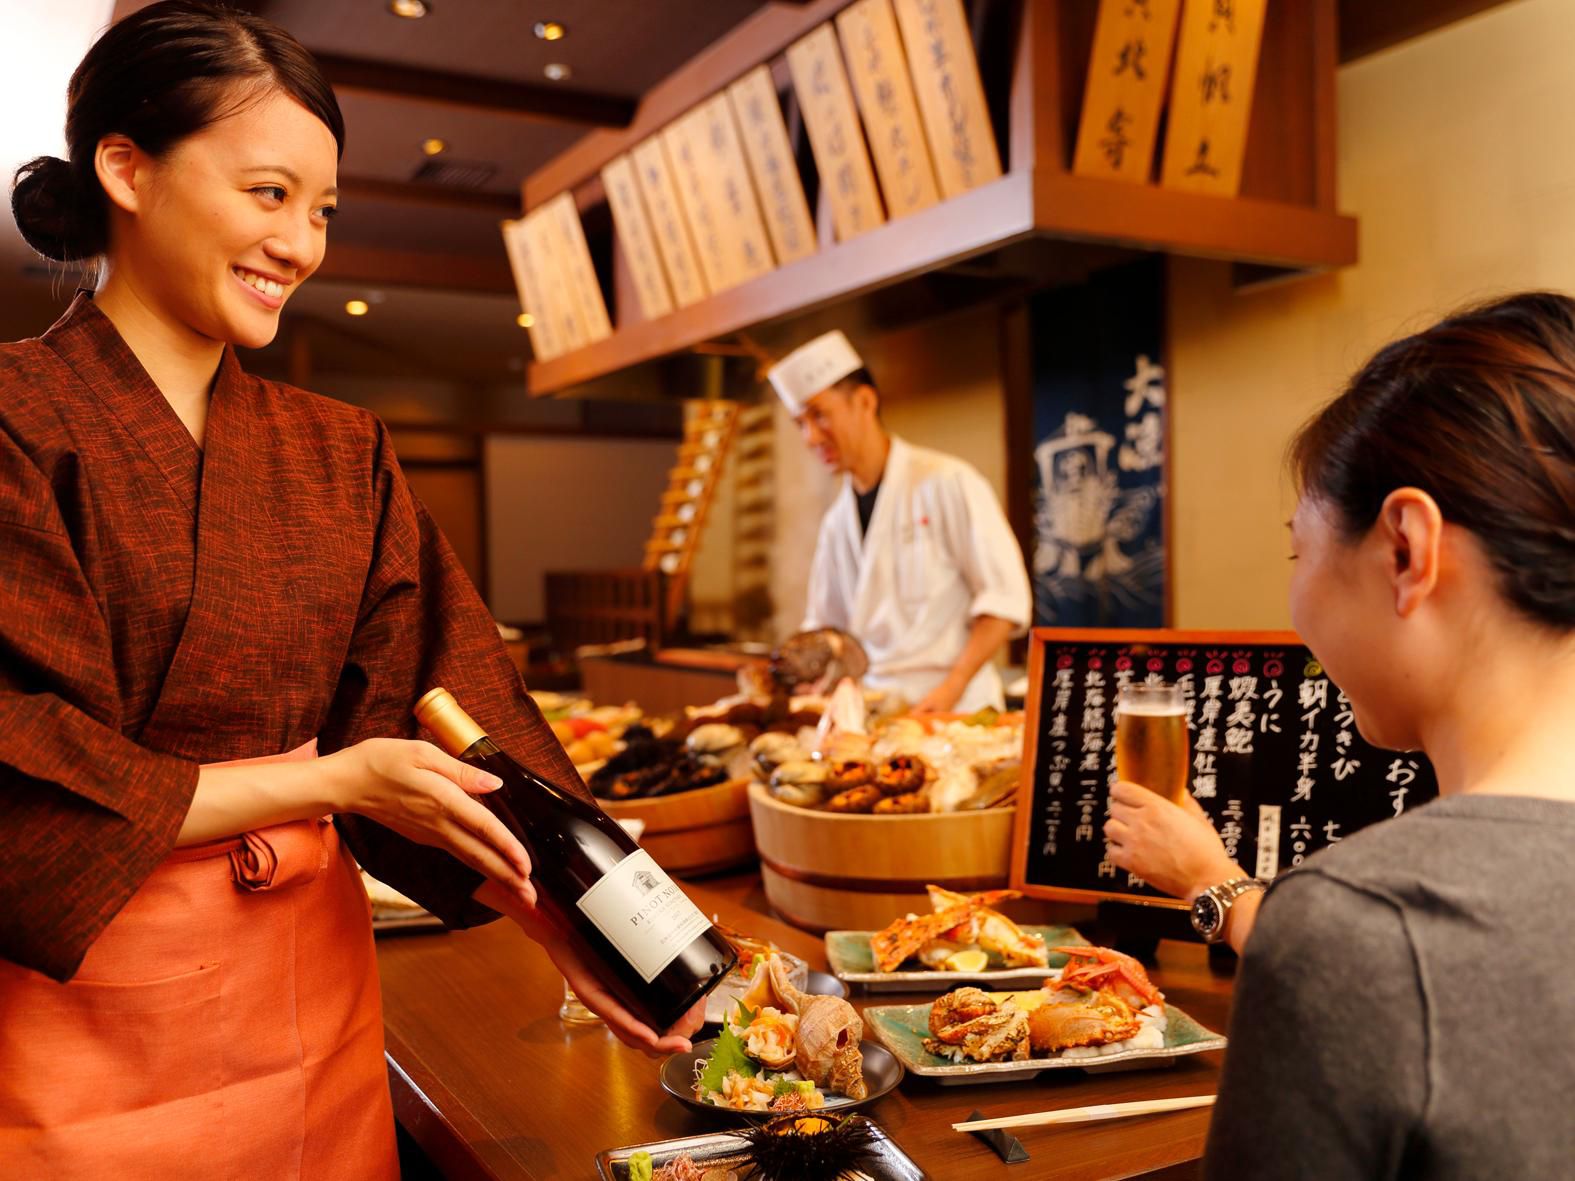 蟹をはじめとした魚介類はもちろん、肉や野菜など北海道の新鮮な山海の幸を、臨場感たっぷりの炉端焼きスタイルでお召し上がりいただけます。新鮮な活の魚介類もおすすめ。料理に合うお飲み物も日本酒やワインなど豊富にご用意しております。